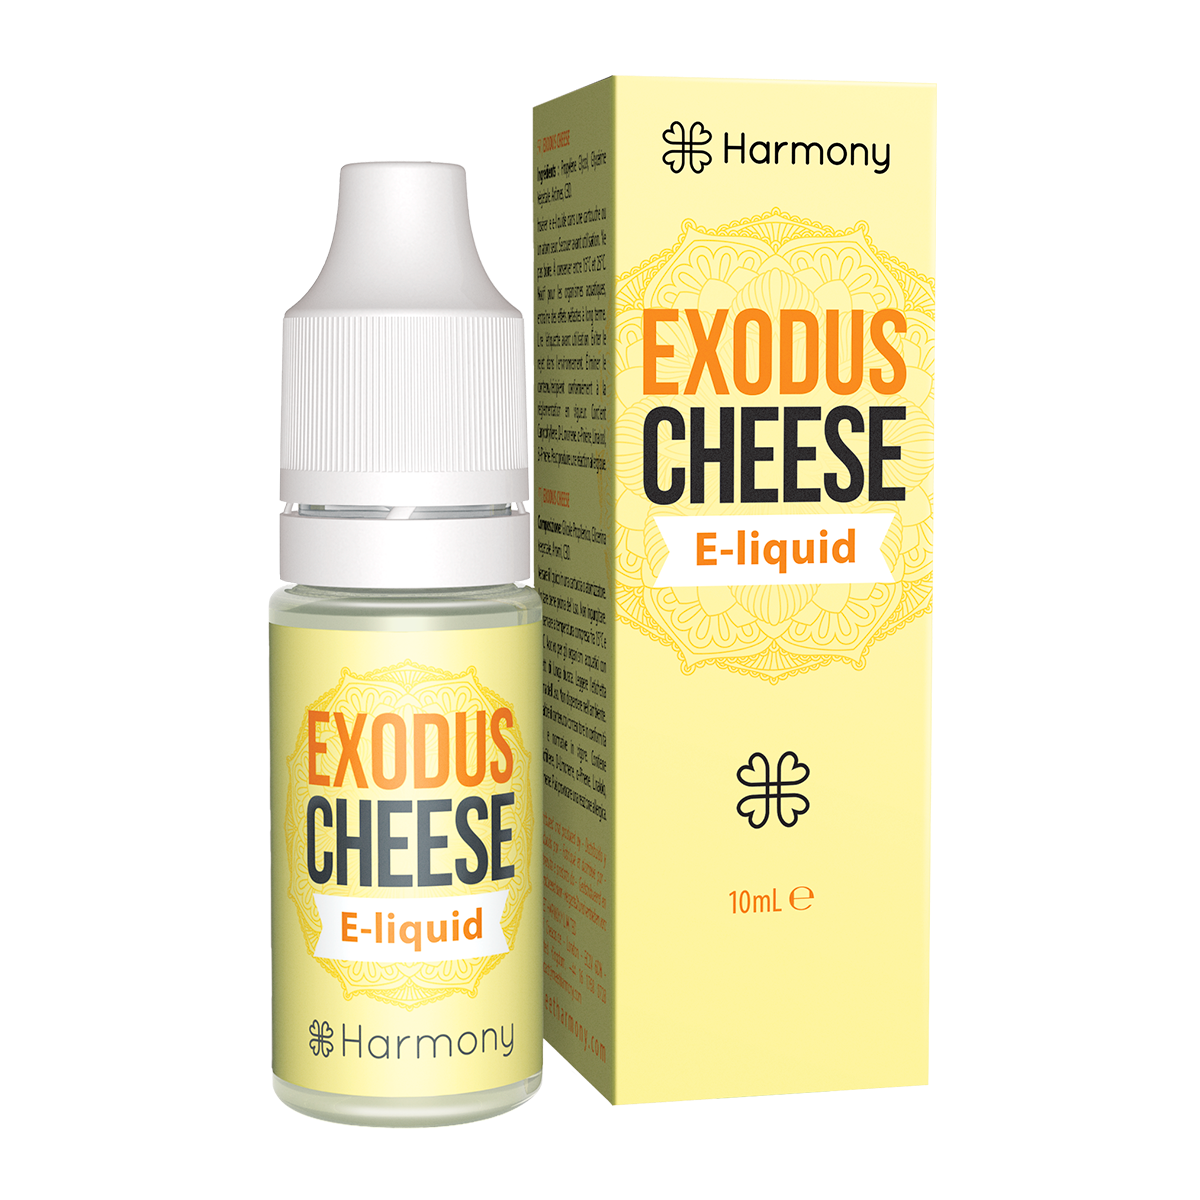 Harmony Exodus Cheese 10ml 30mg CBD